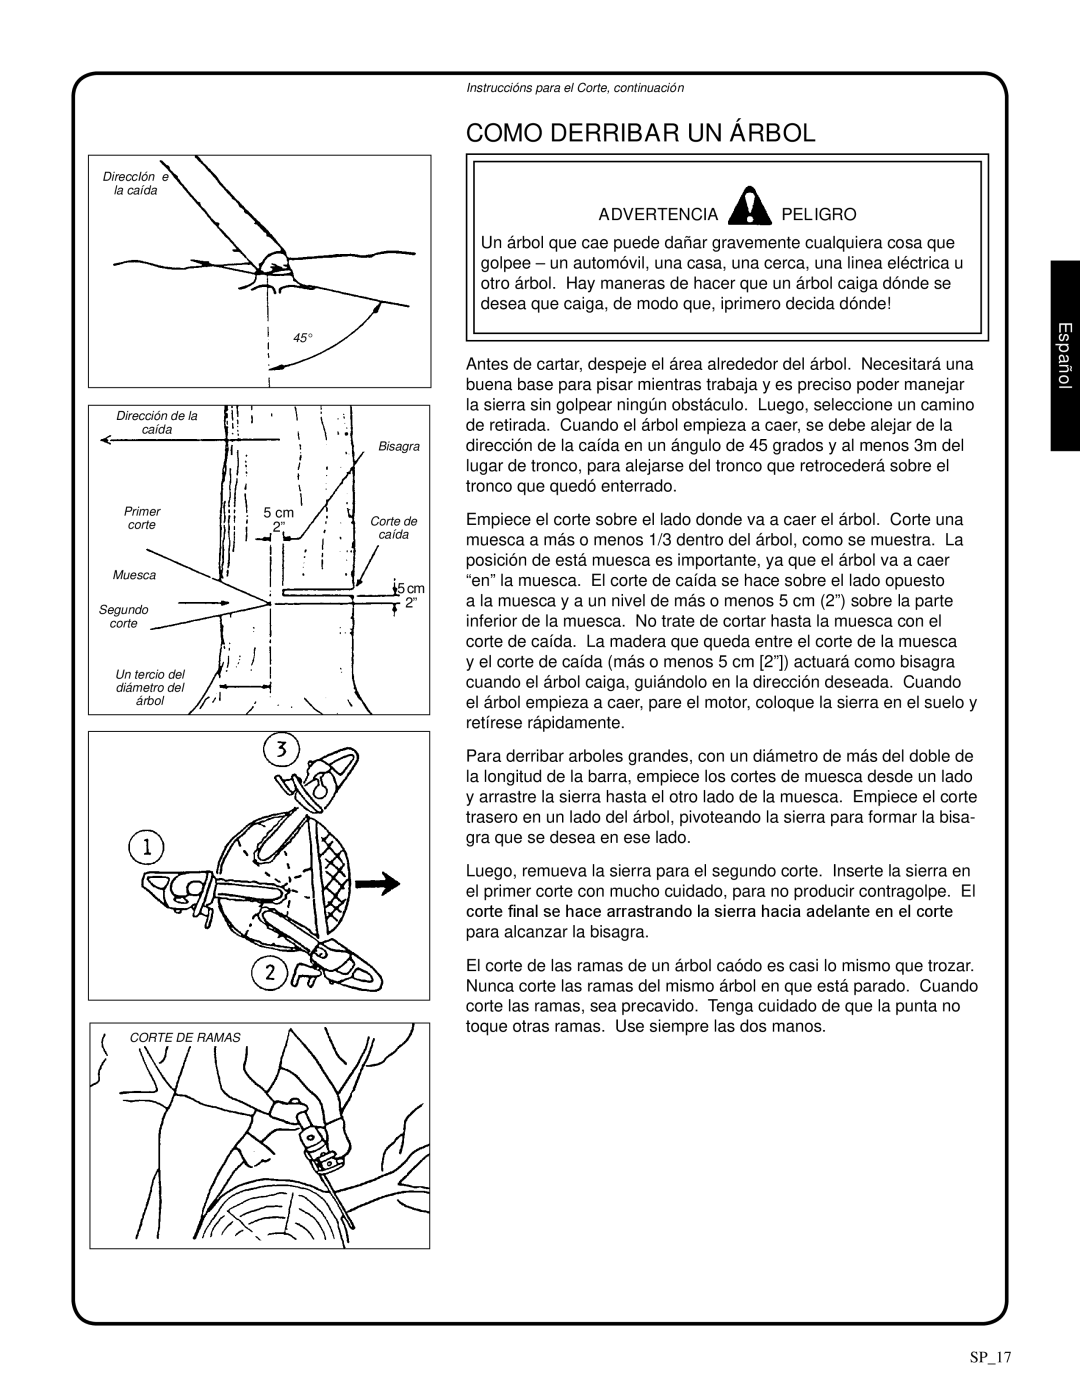 Shindaiwa 326T, 82085 manual Como Derribar Un Árbol, Advertencia Peligro, Español, SP_17 